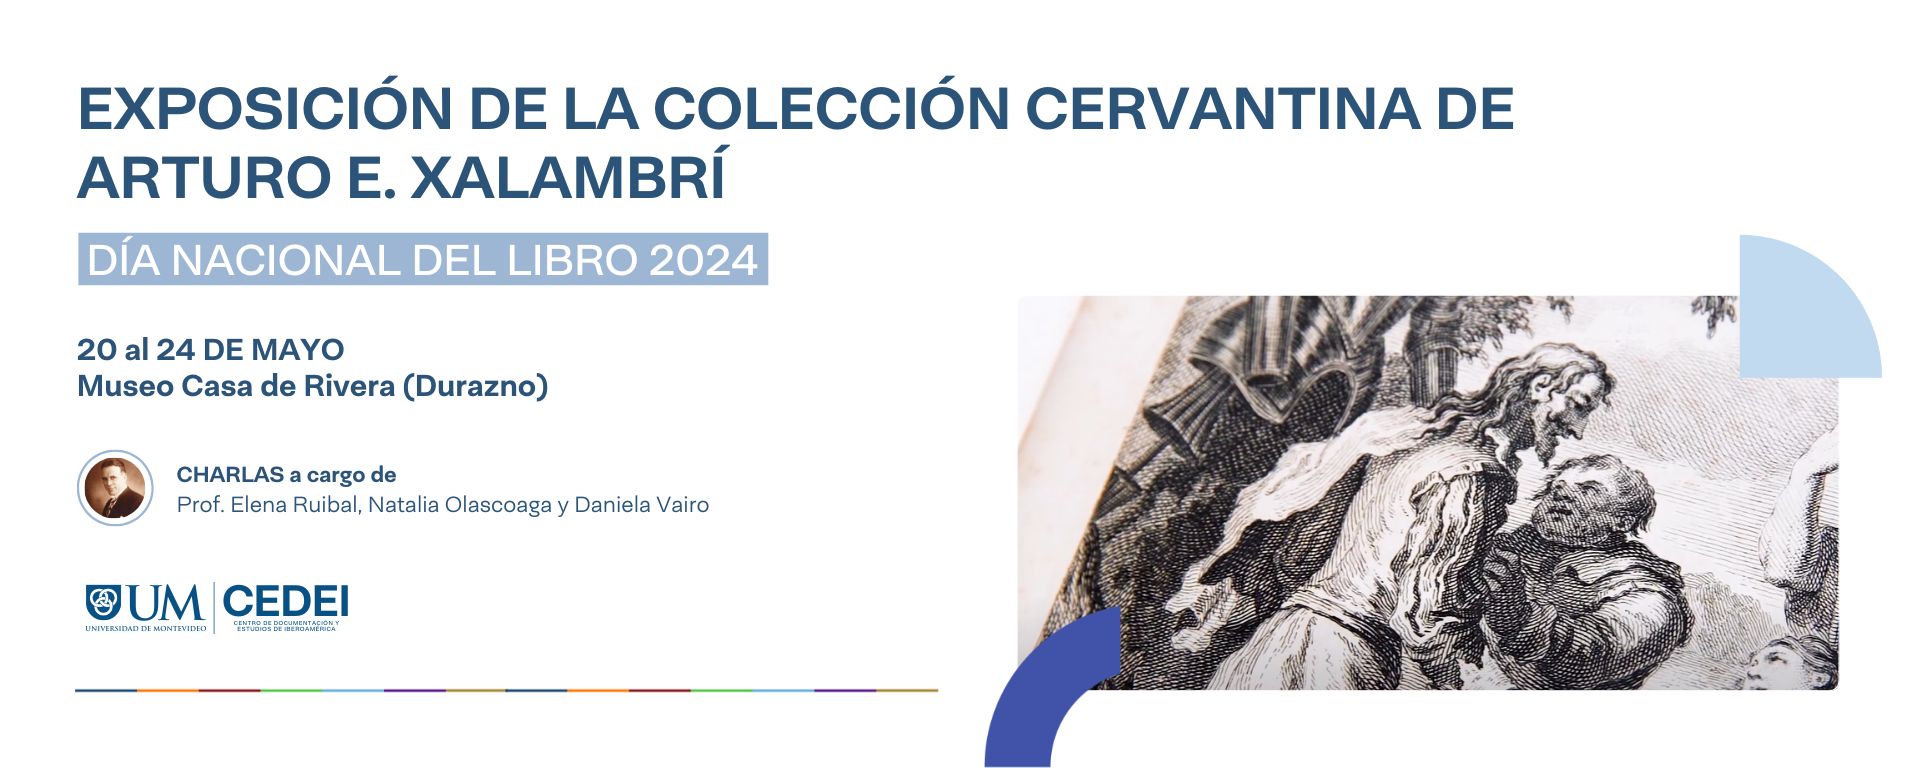 Exposición de la Colección Cervantina de Arturo E. Xalambrí